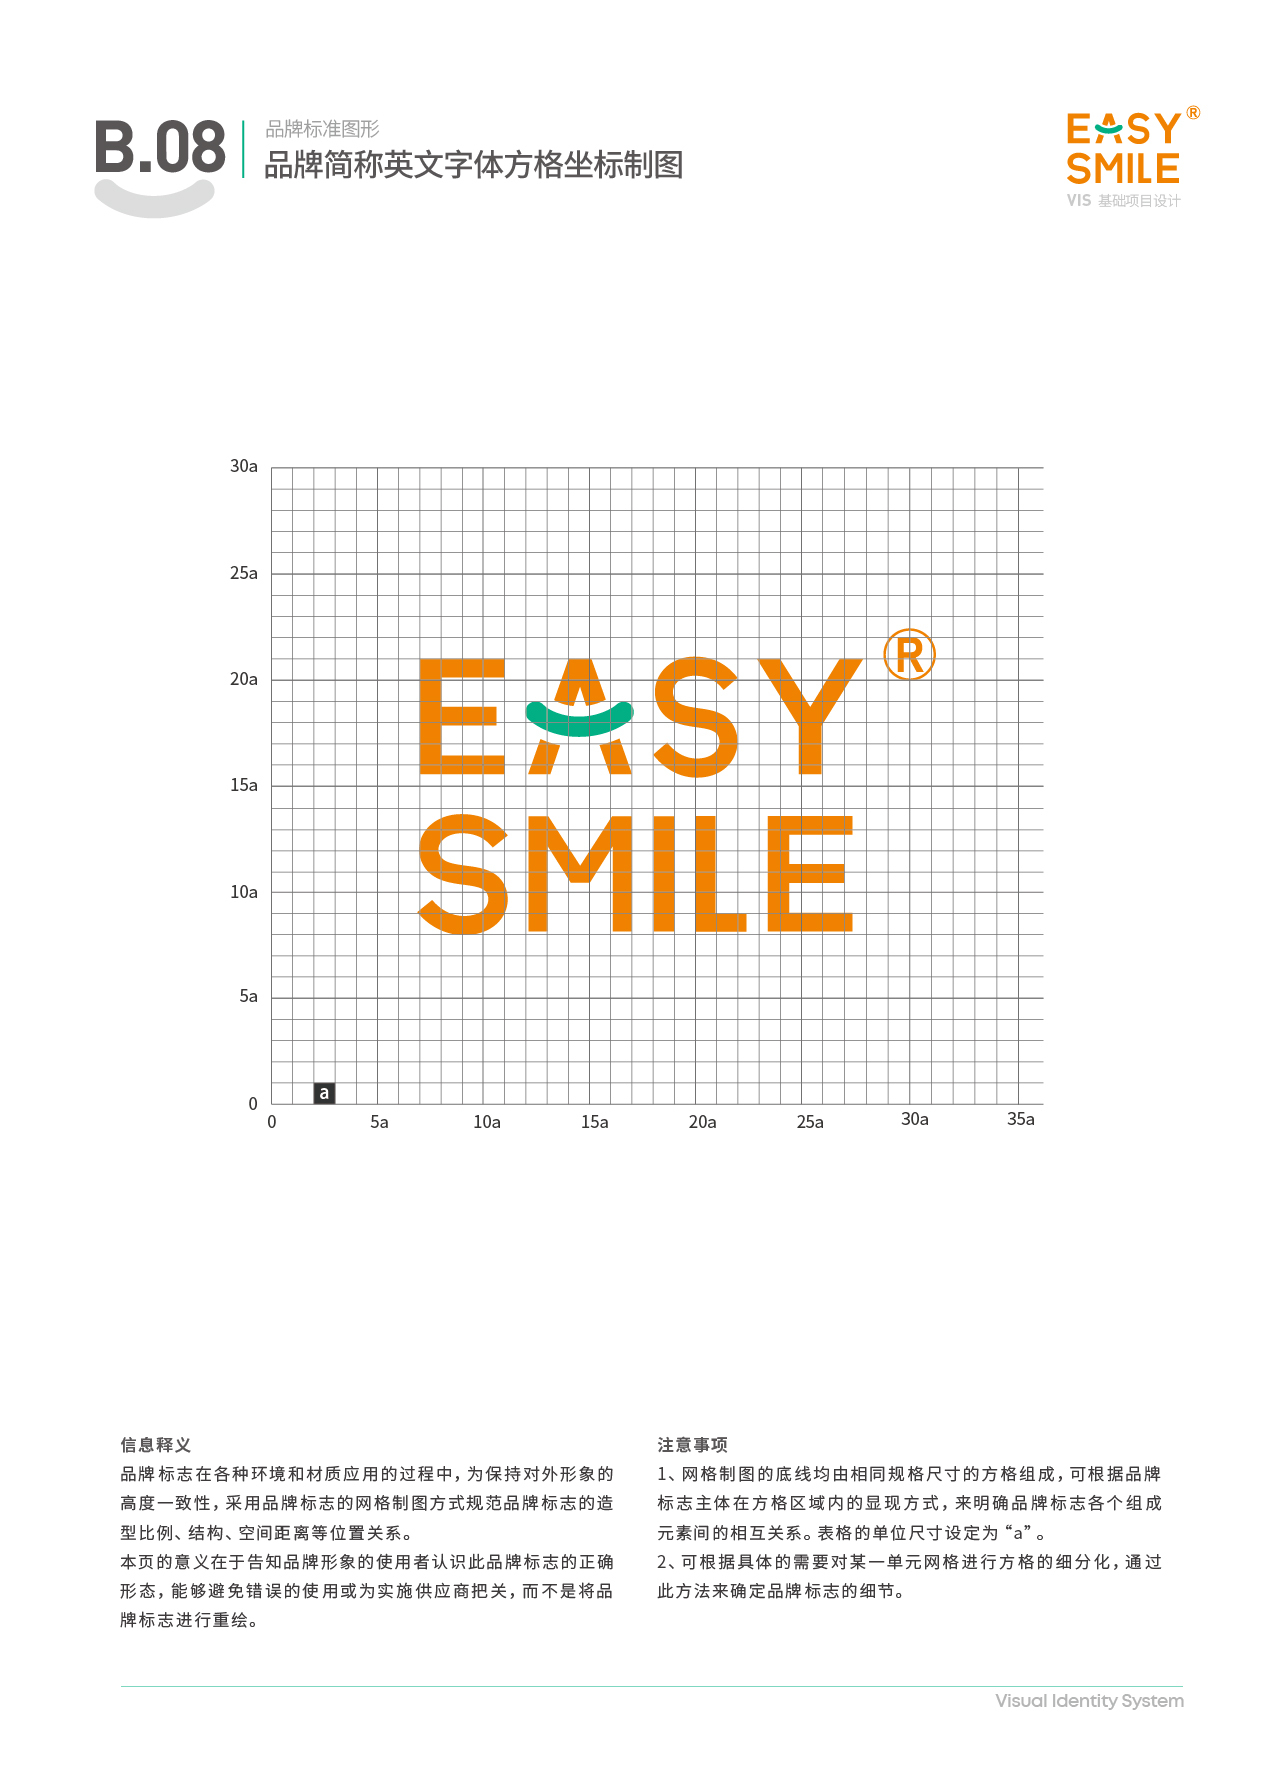 Easysmile 轻松笑品牌VIS图17